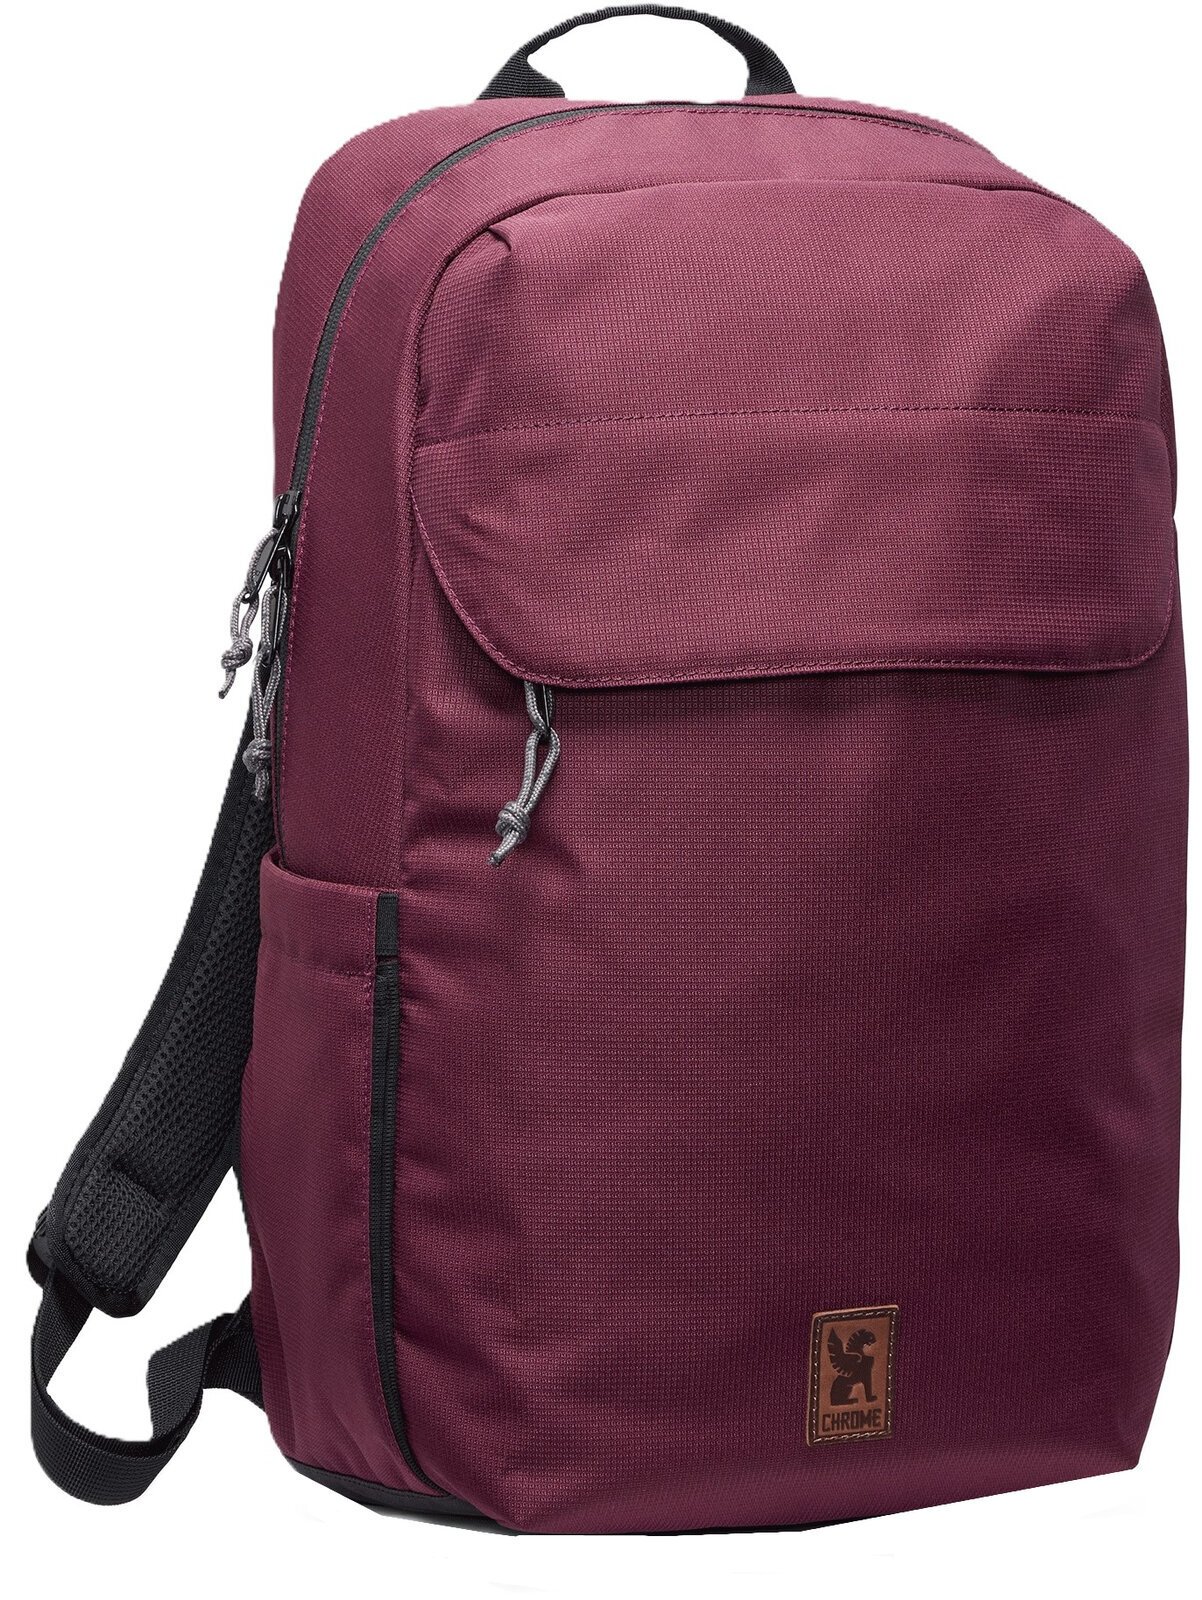 Lifestyle Backpack / Bag Chrome Ruckas Backpack Royale 23 L Backpack